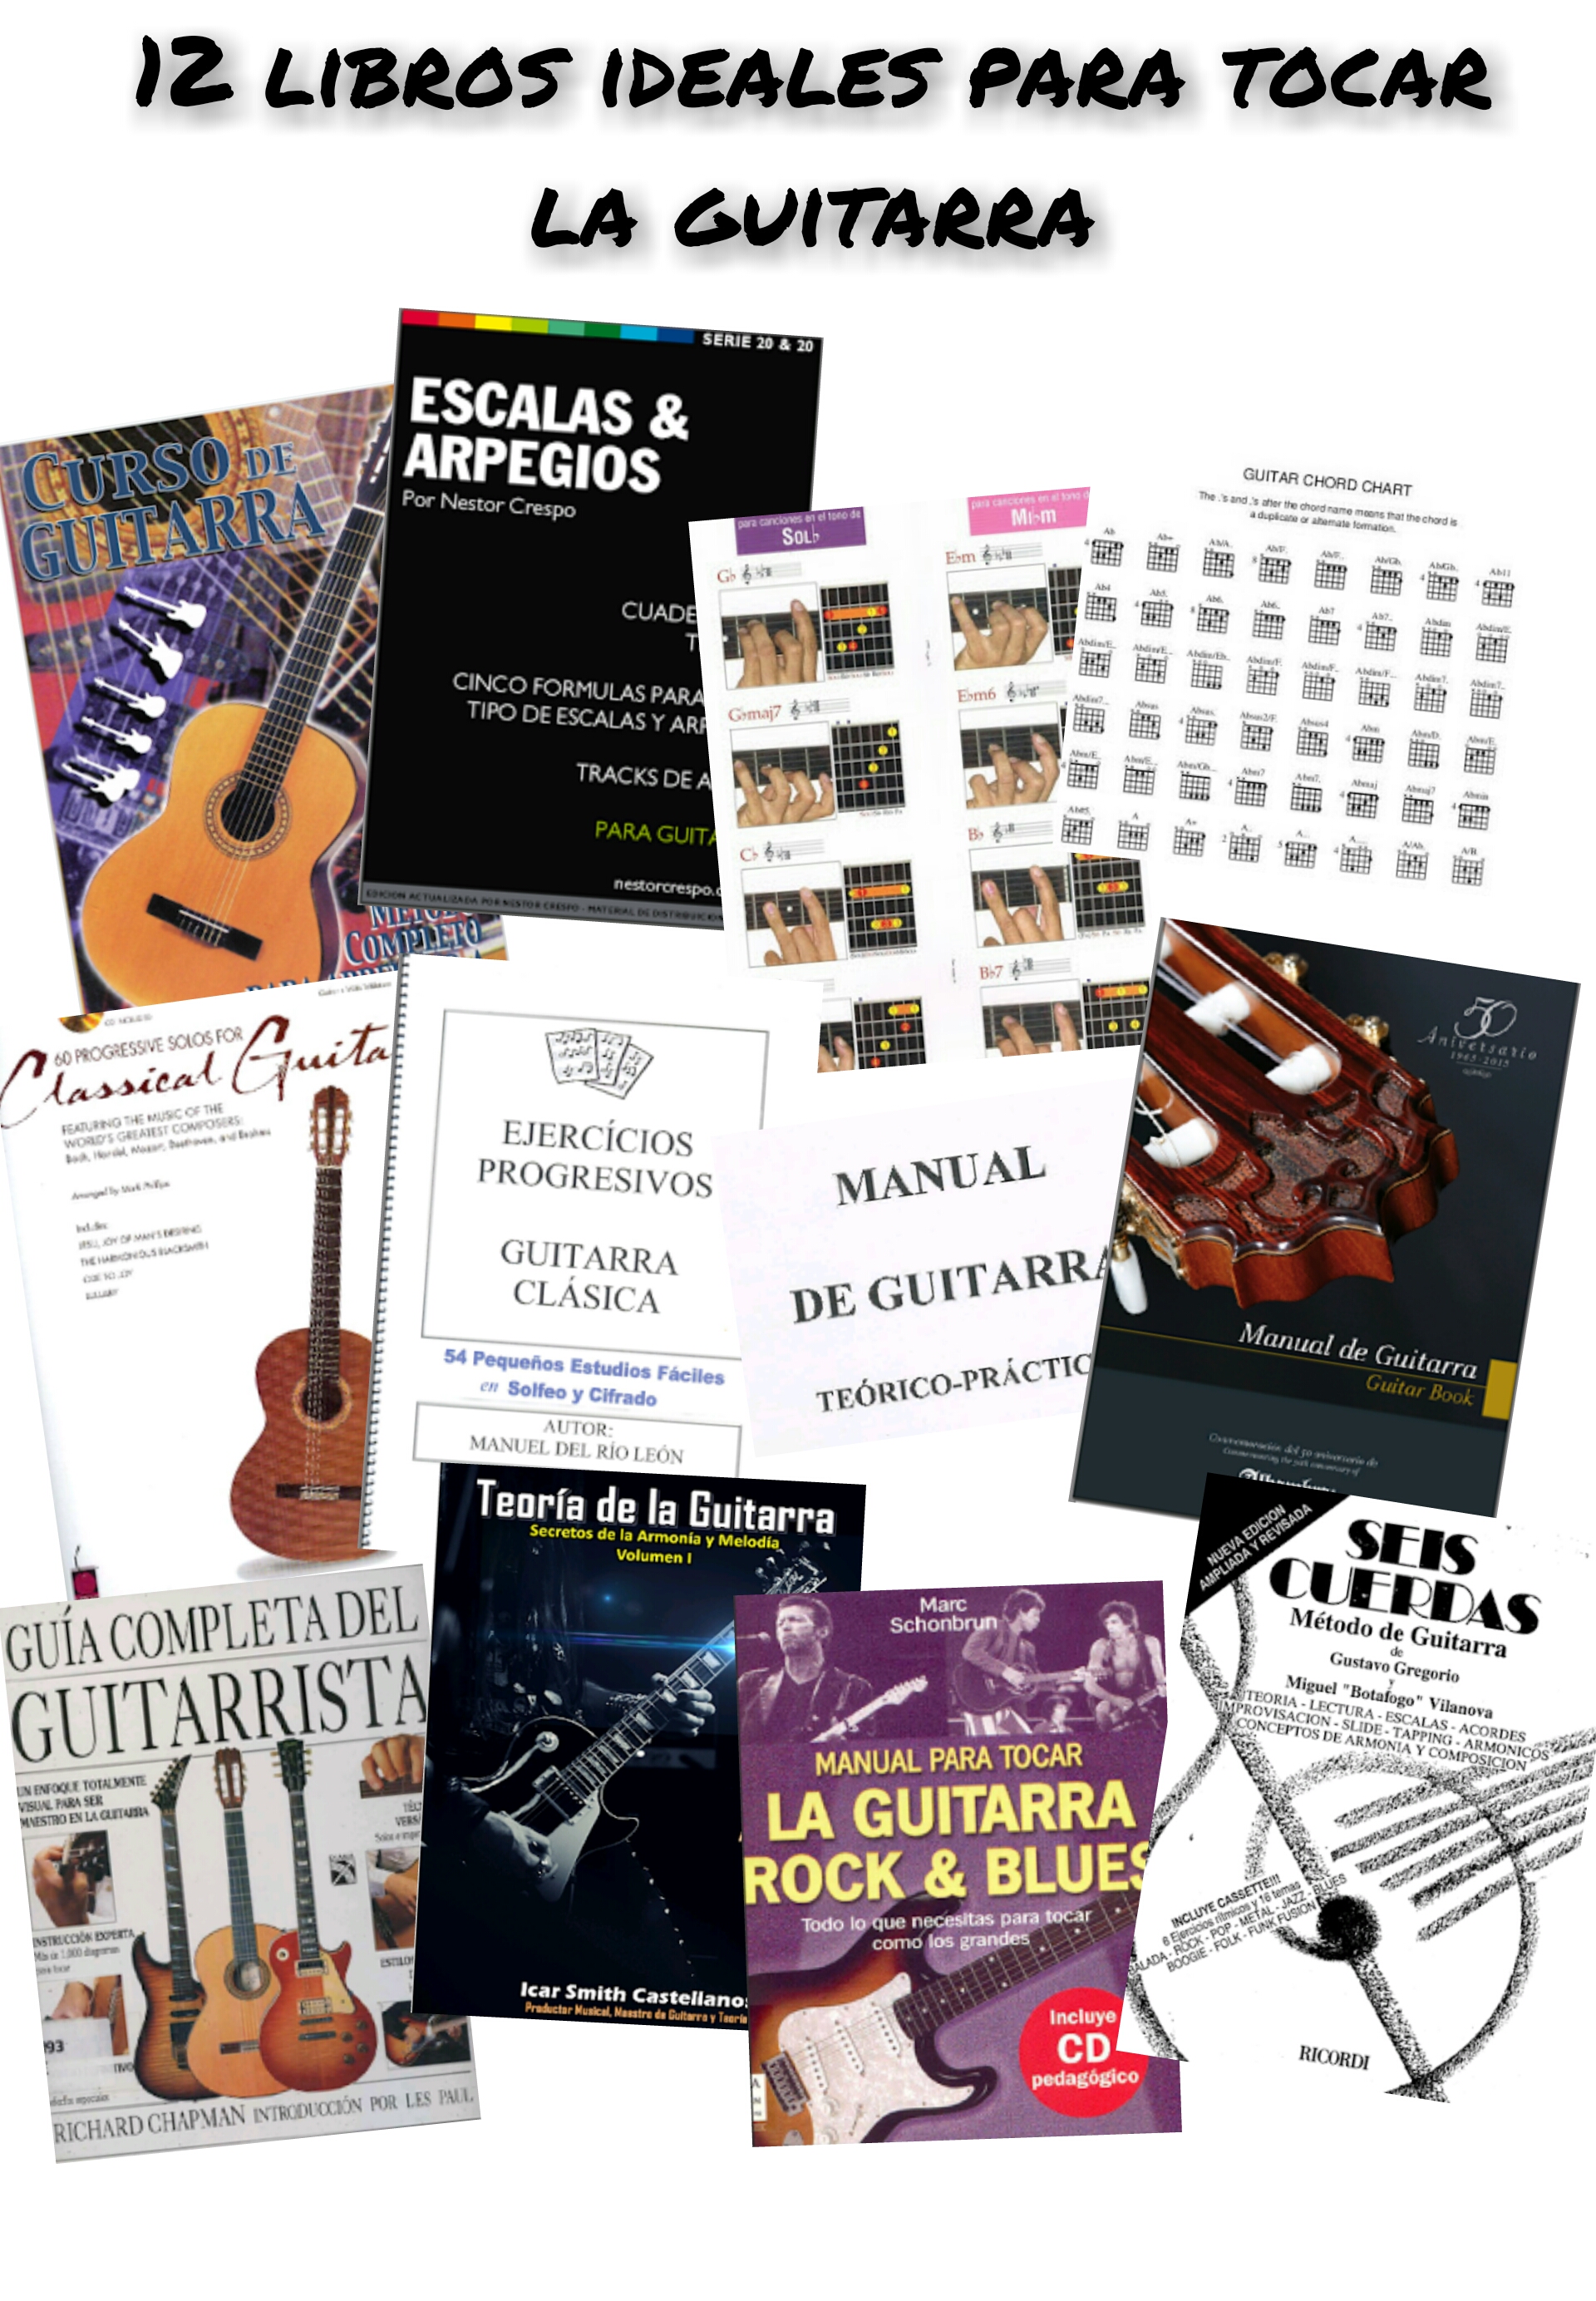 Representar completamente filete 12 mejores libros para aprender a tocar la guitarra clásica y eléctrica